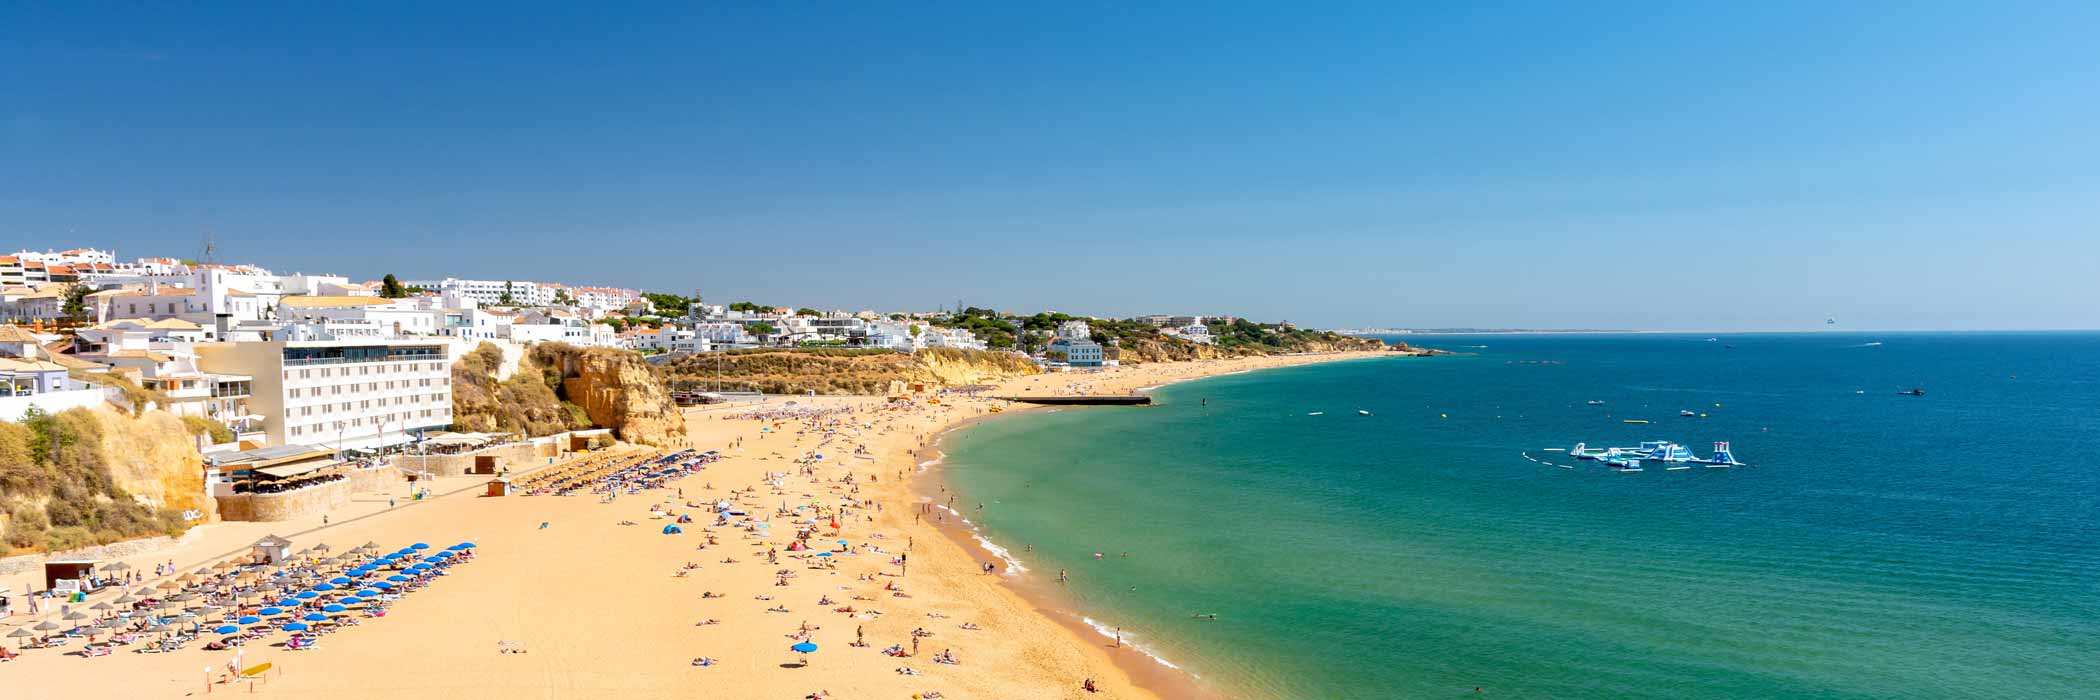 Hotels in the Algarve